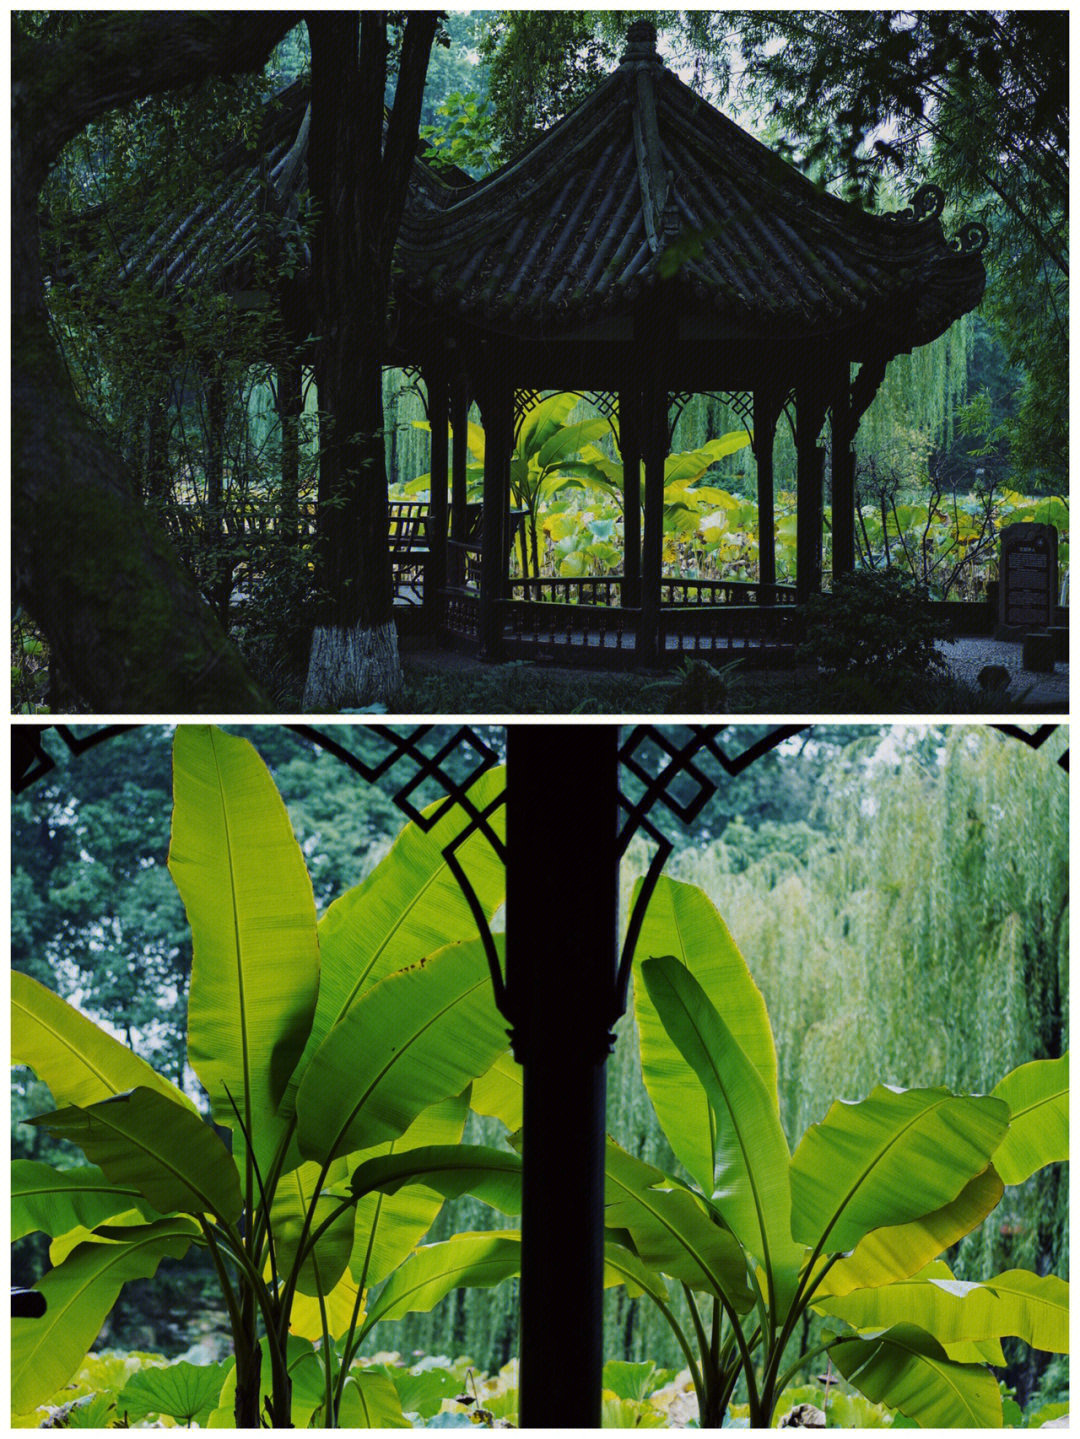 桂湖公园景色描写图片